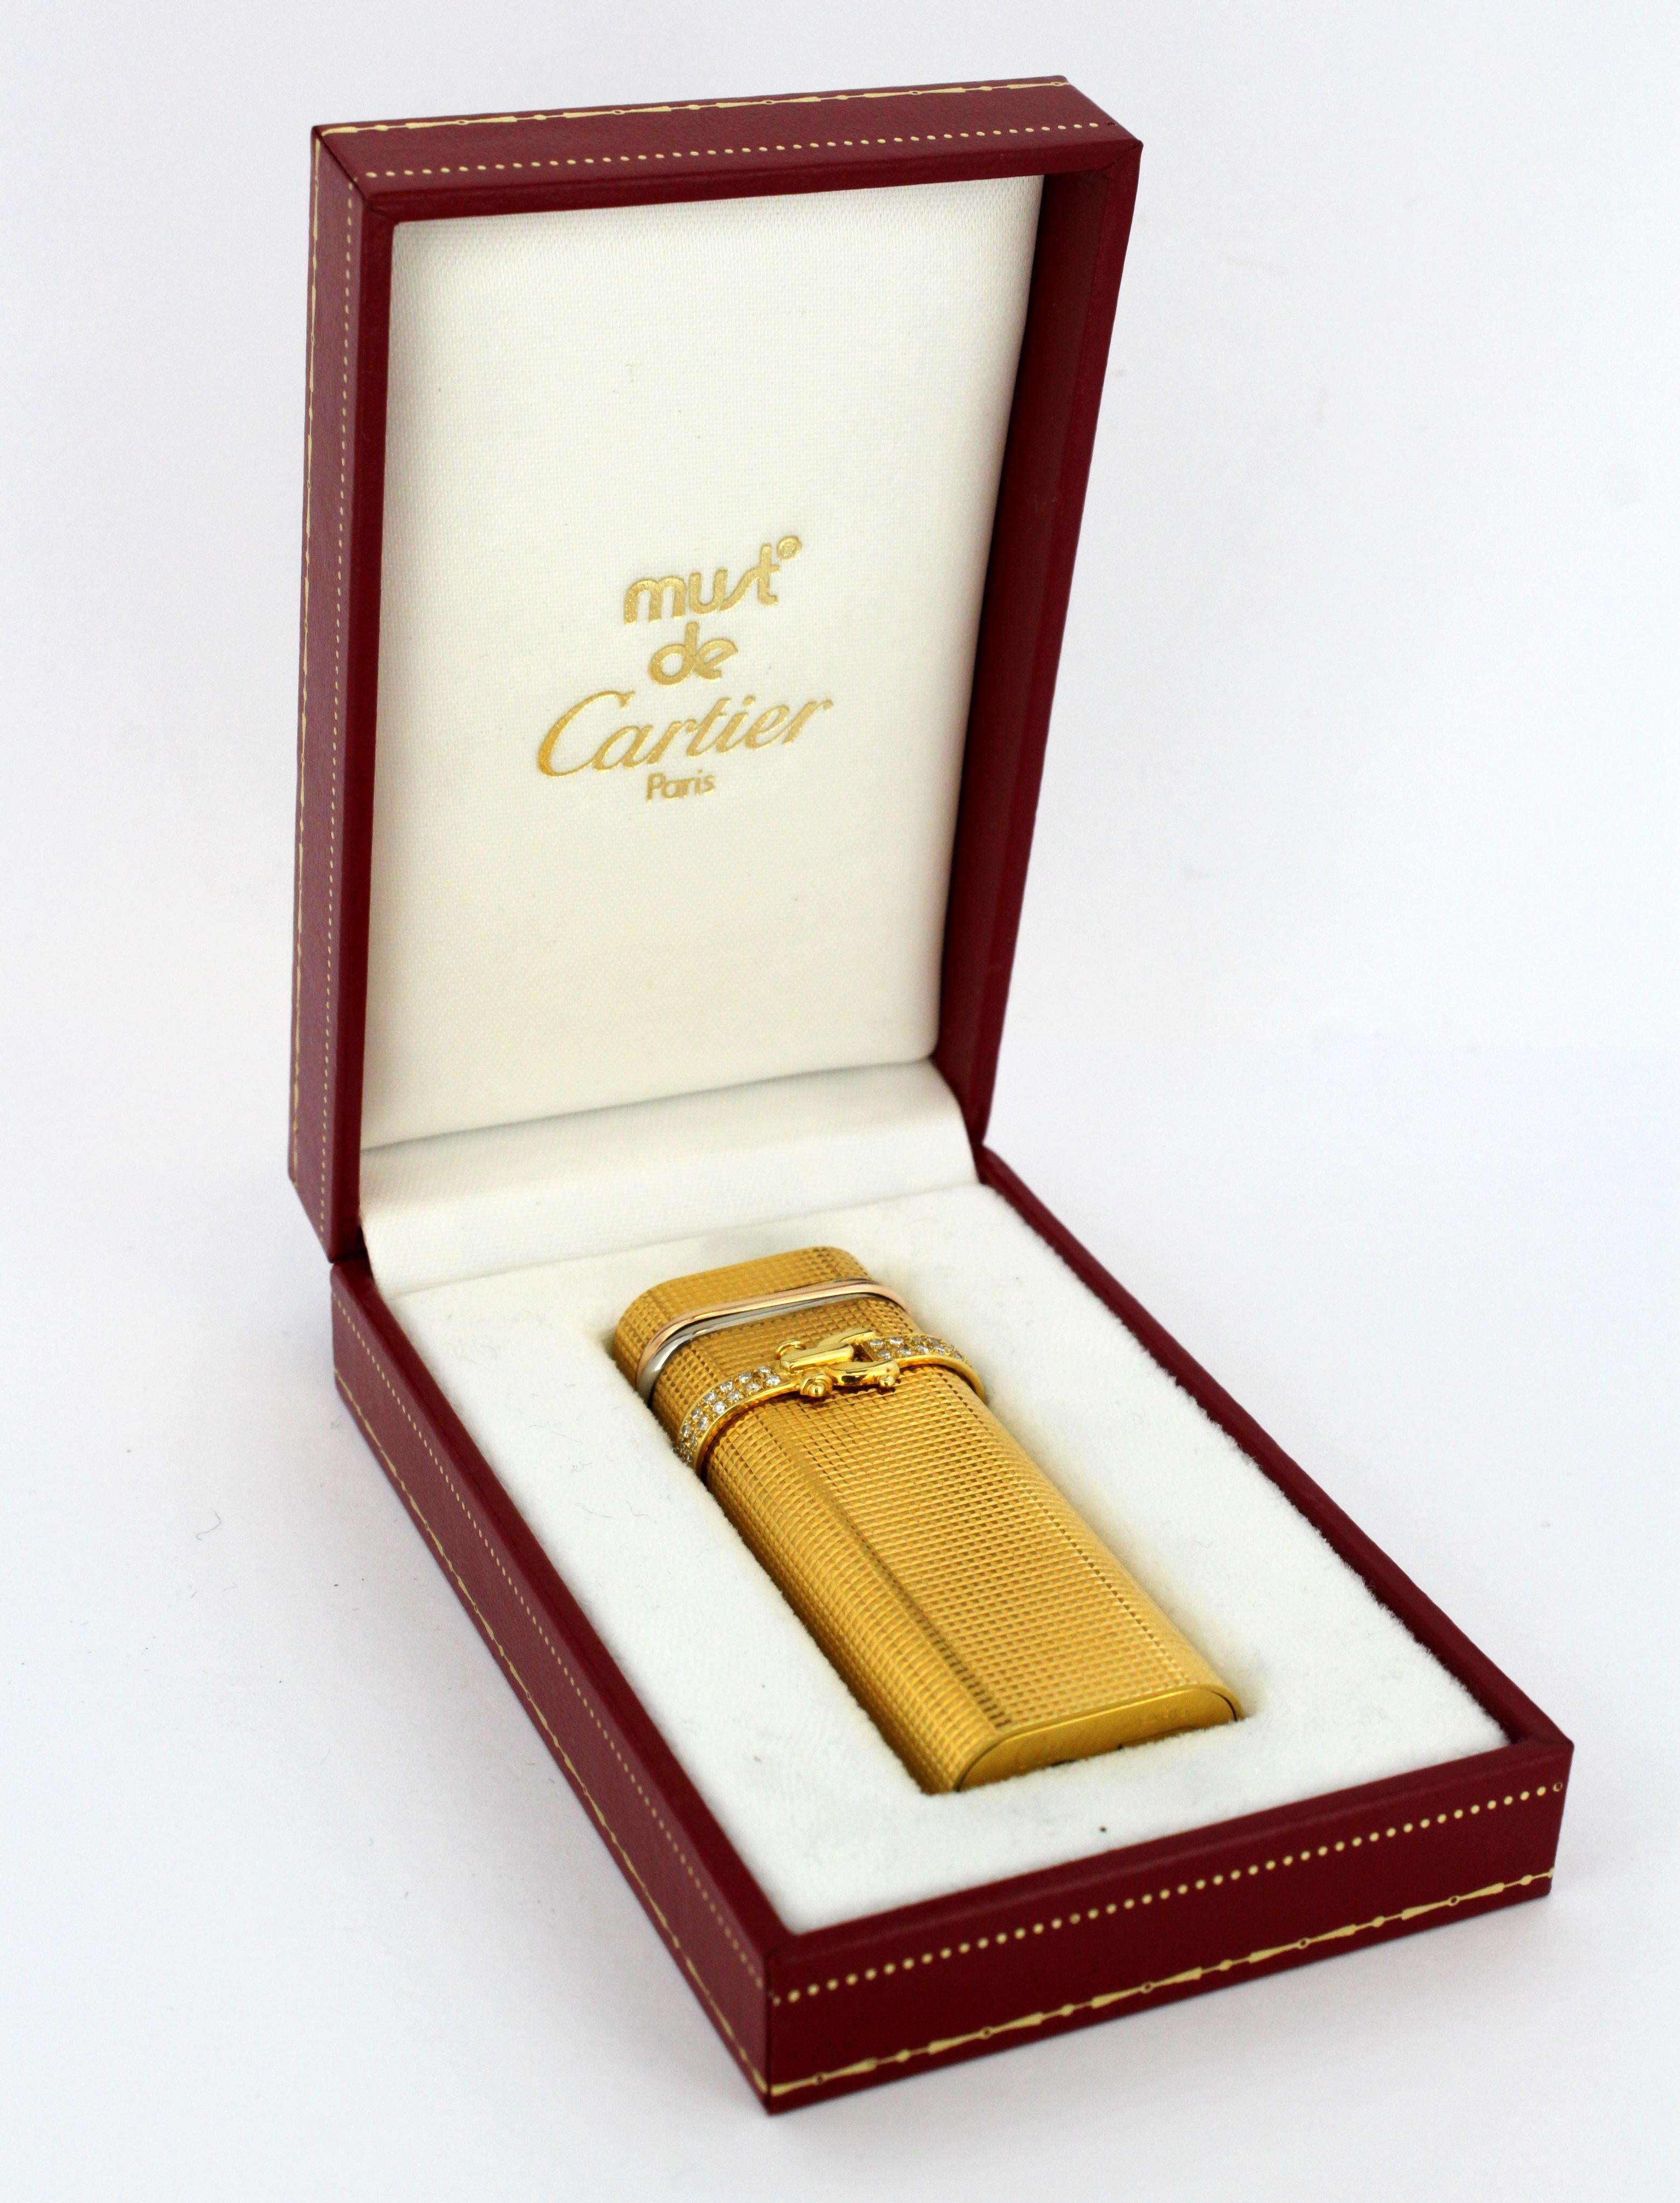 Vieux briquet Cartier plaqué or avec diamants. 
Made in France Circa 1990's
Serial : 46941N
Entièrement fonctionnel. 

Dimensions - 
Longueur x Largeur x Profondeur : 7 x 2::8 x 1::5 cm
Poids : 86 grammes

Diamants - 
Taille : Rond
Nombre de